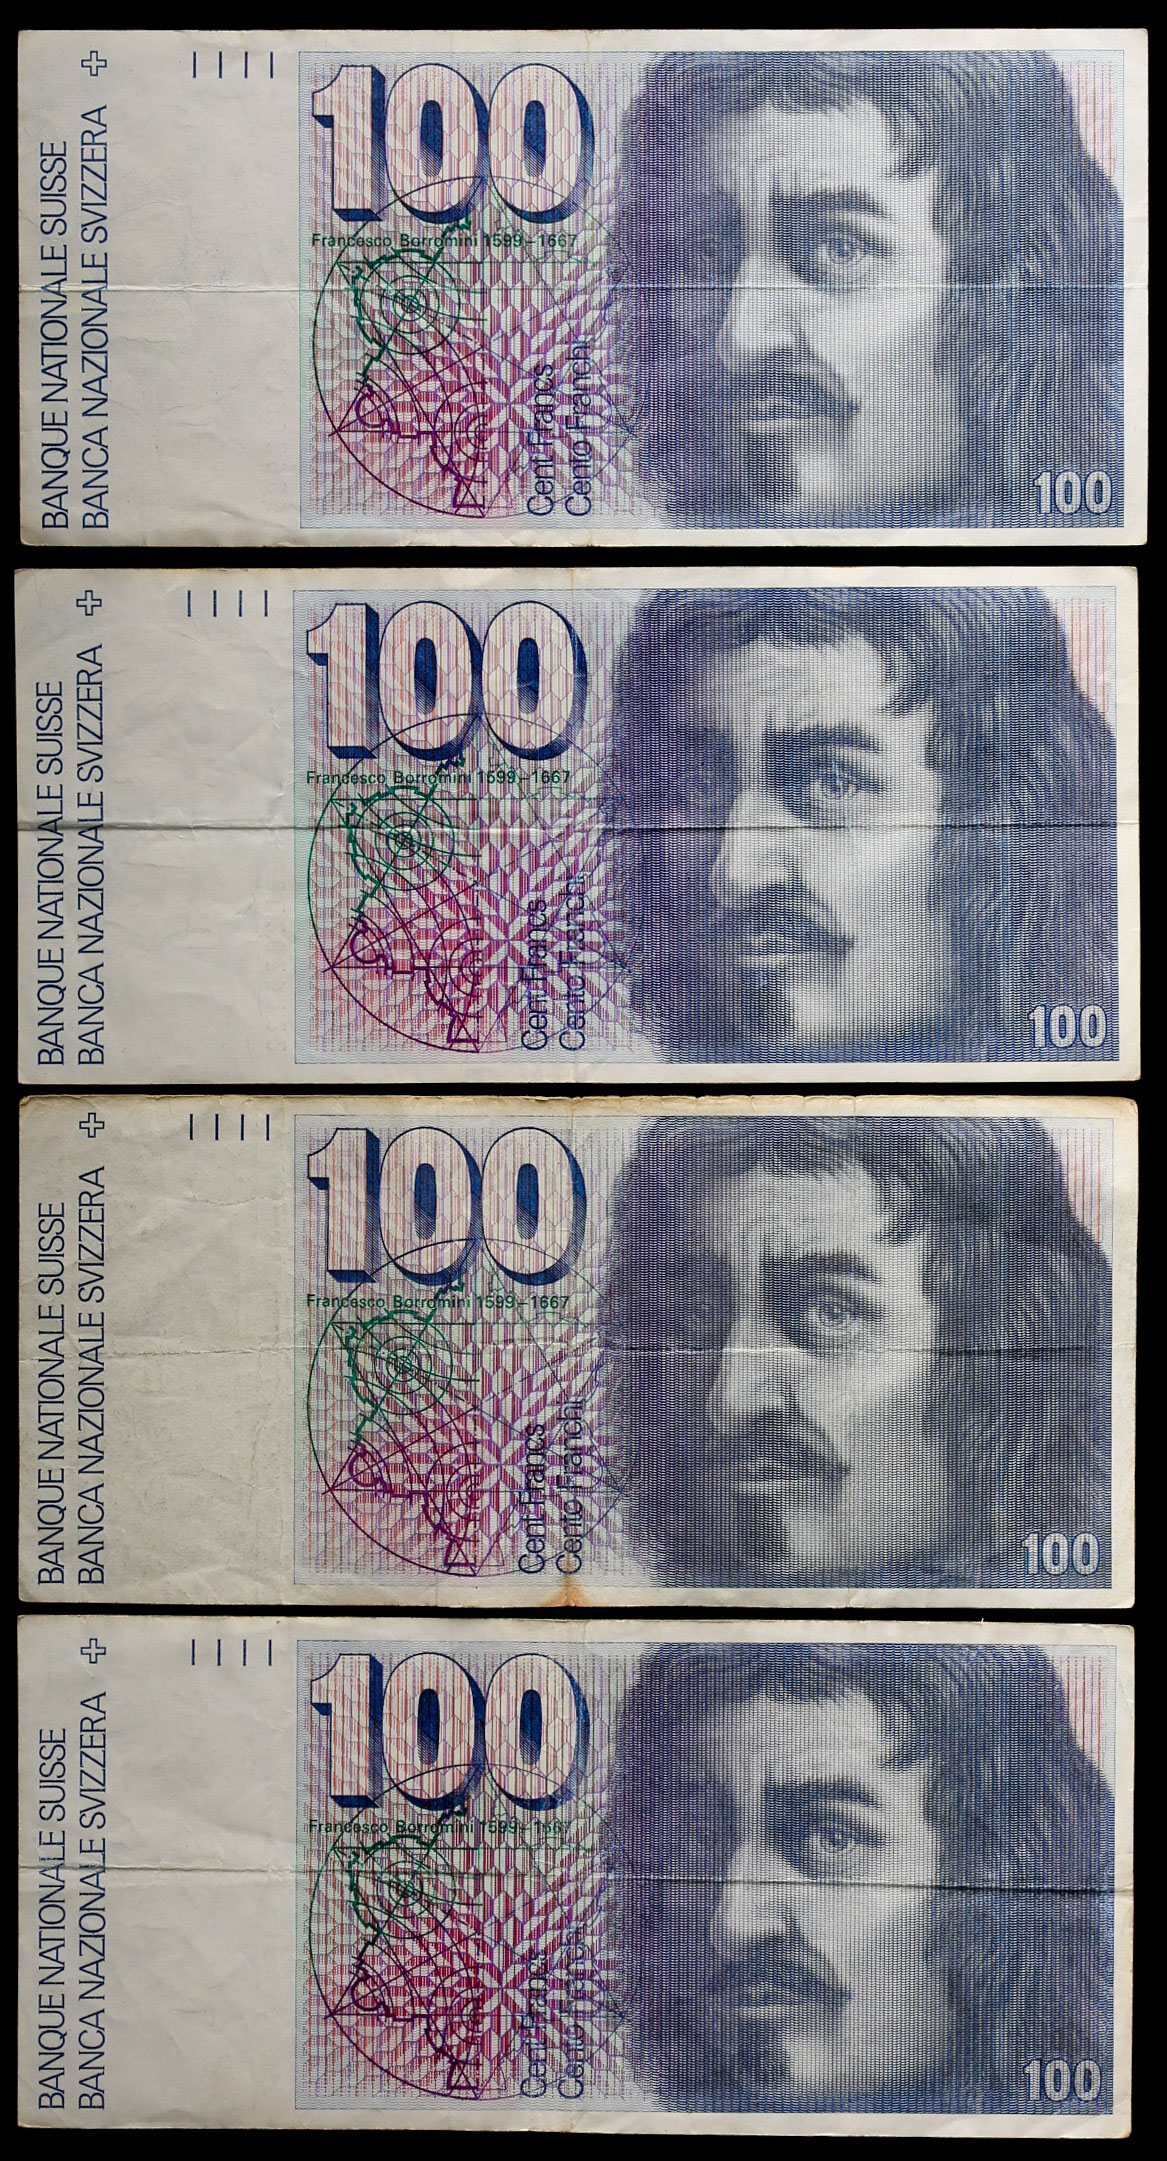 钱币博物馆| SWITZERLAND スイス100Franken 計4枚返品不可Sold as is